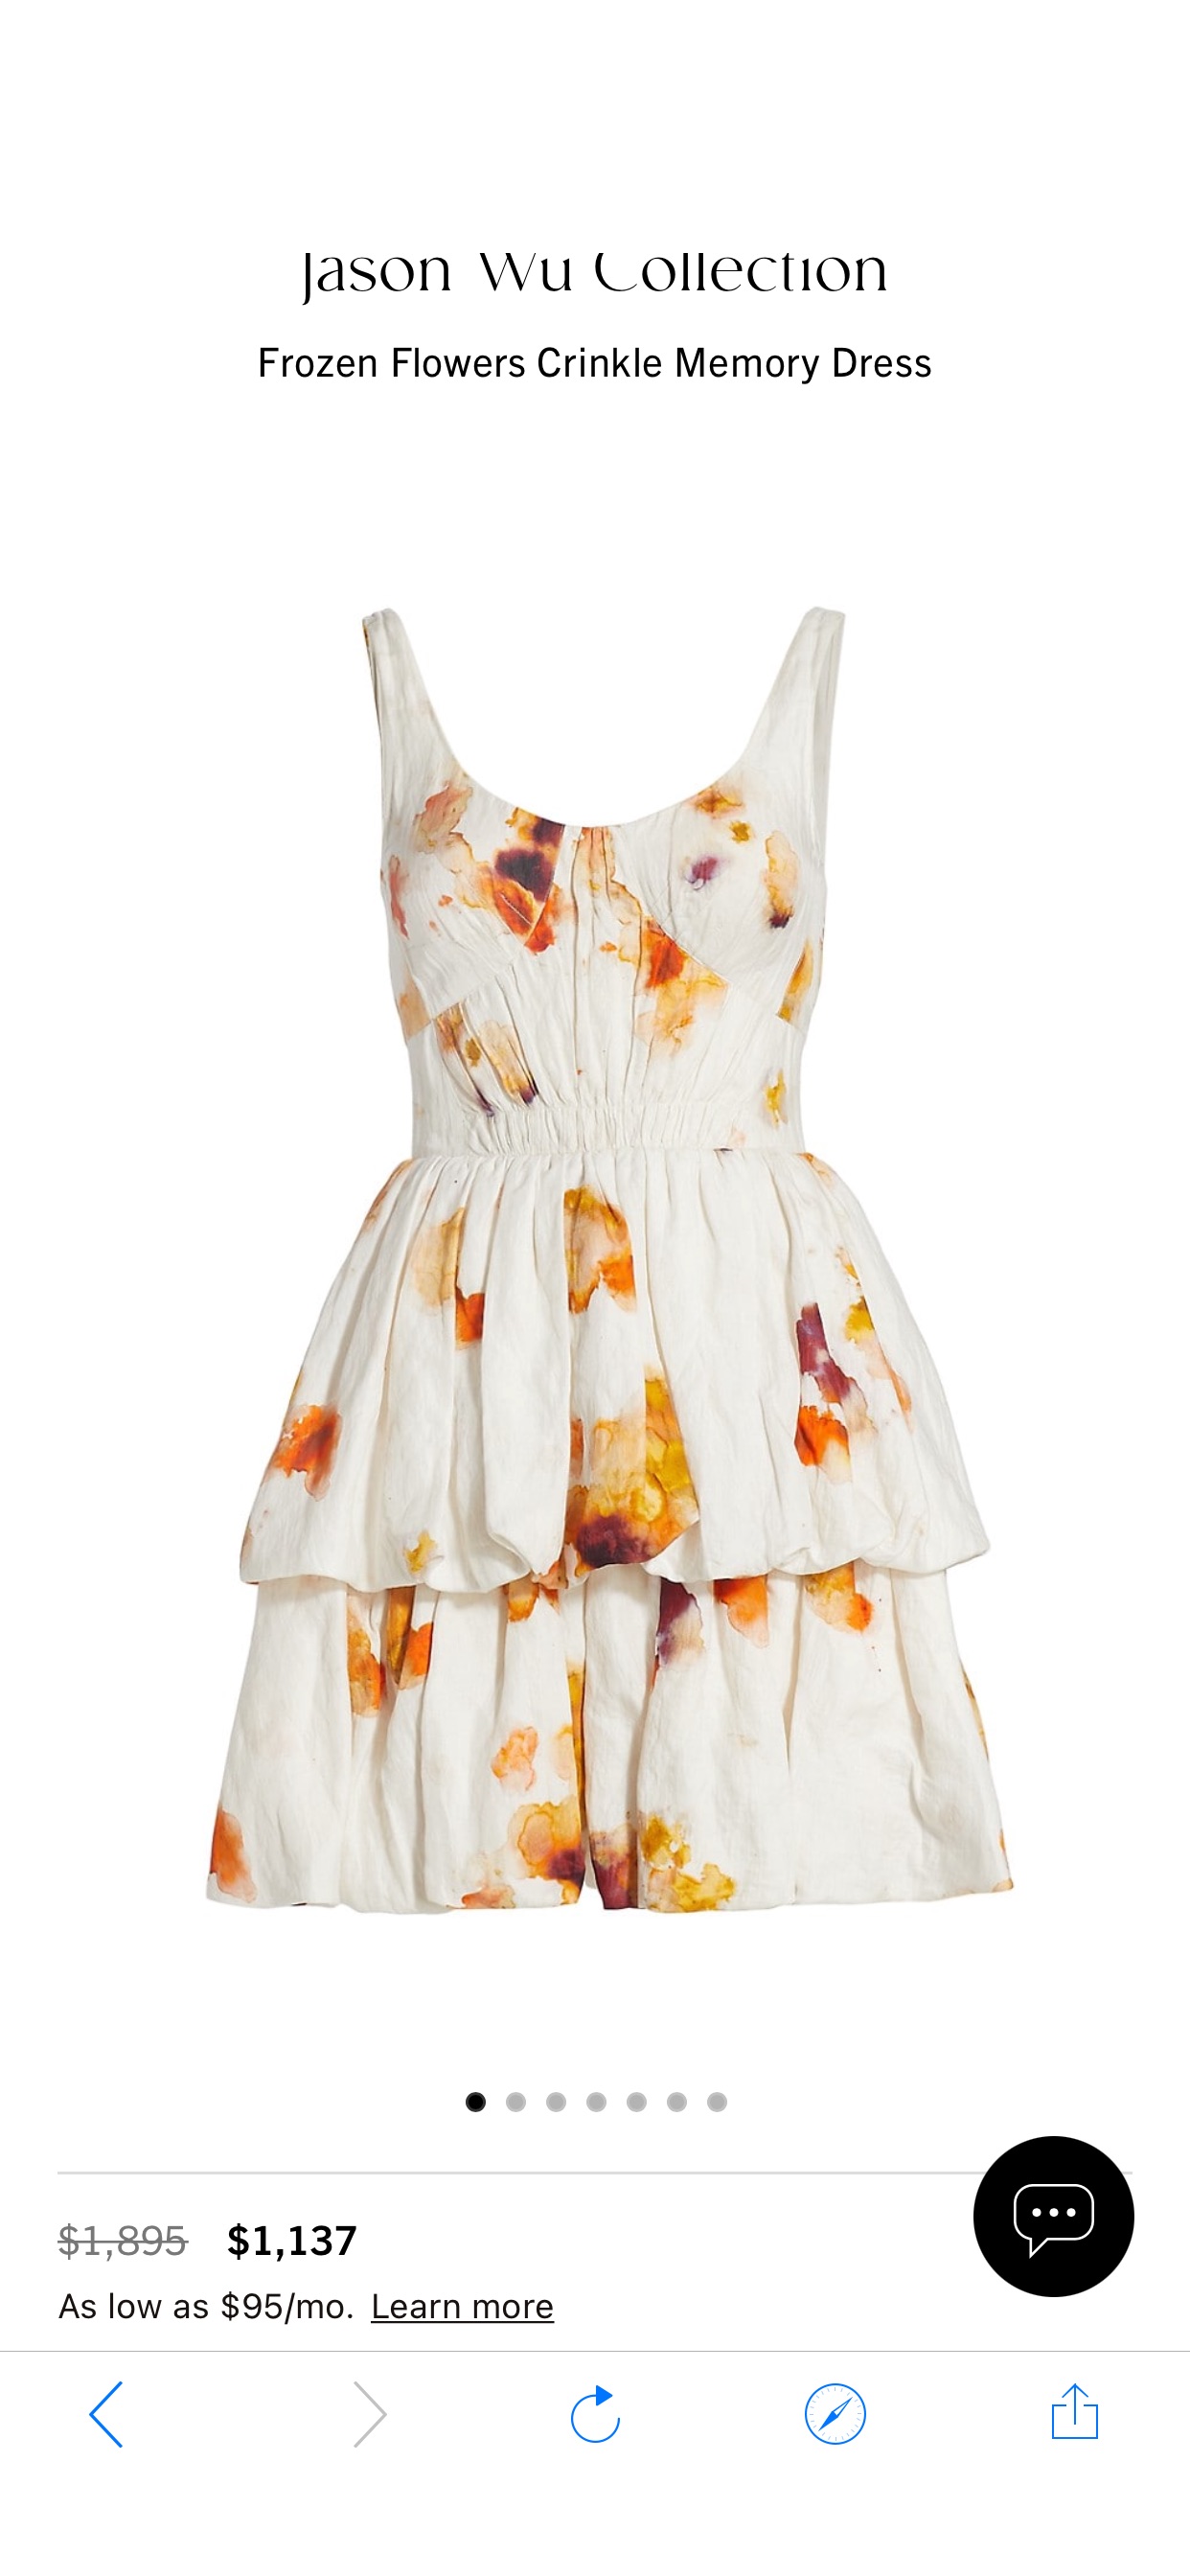 Shop Jason Wu Collection Frozen Flowers Crinkle Memory Dress | Saks Fifth Avenue
连衣裙